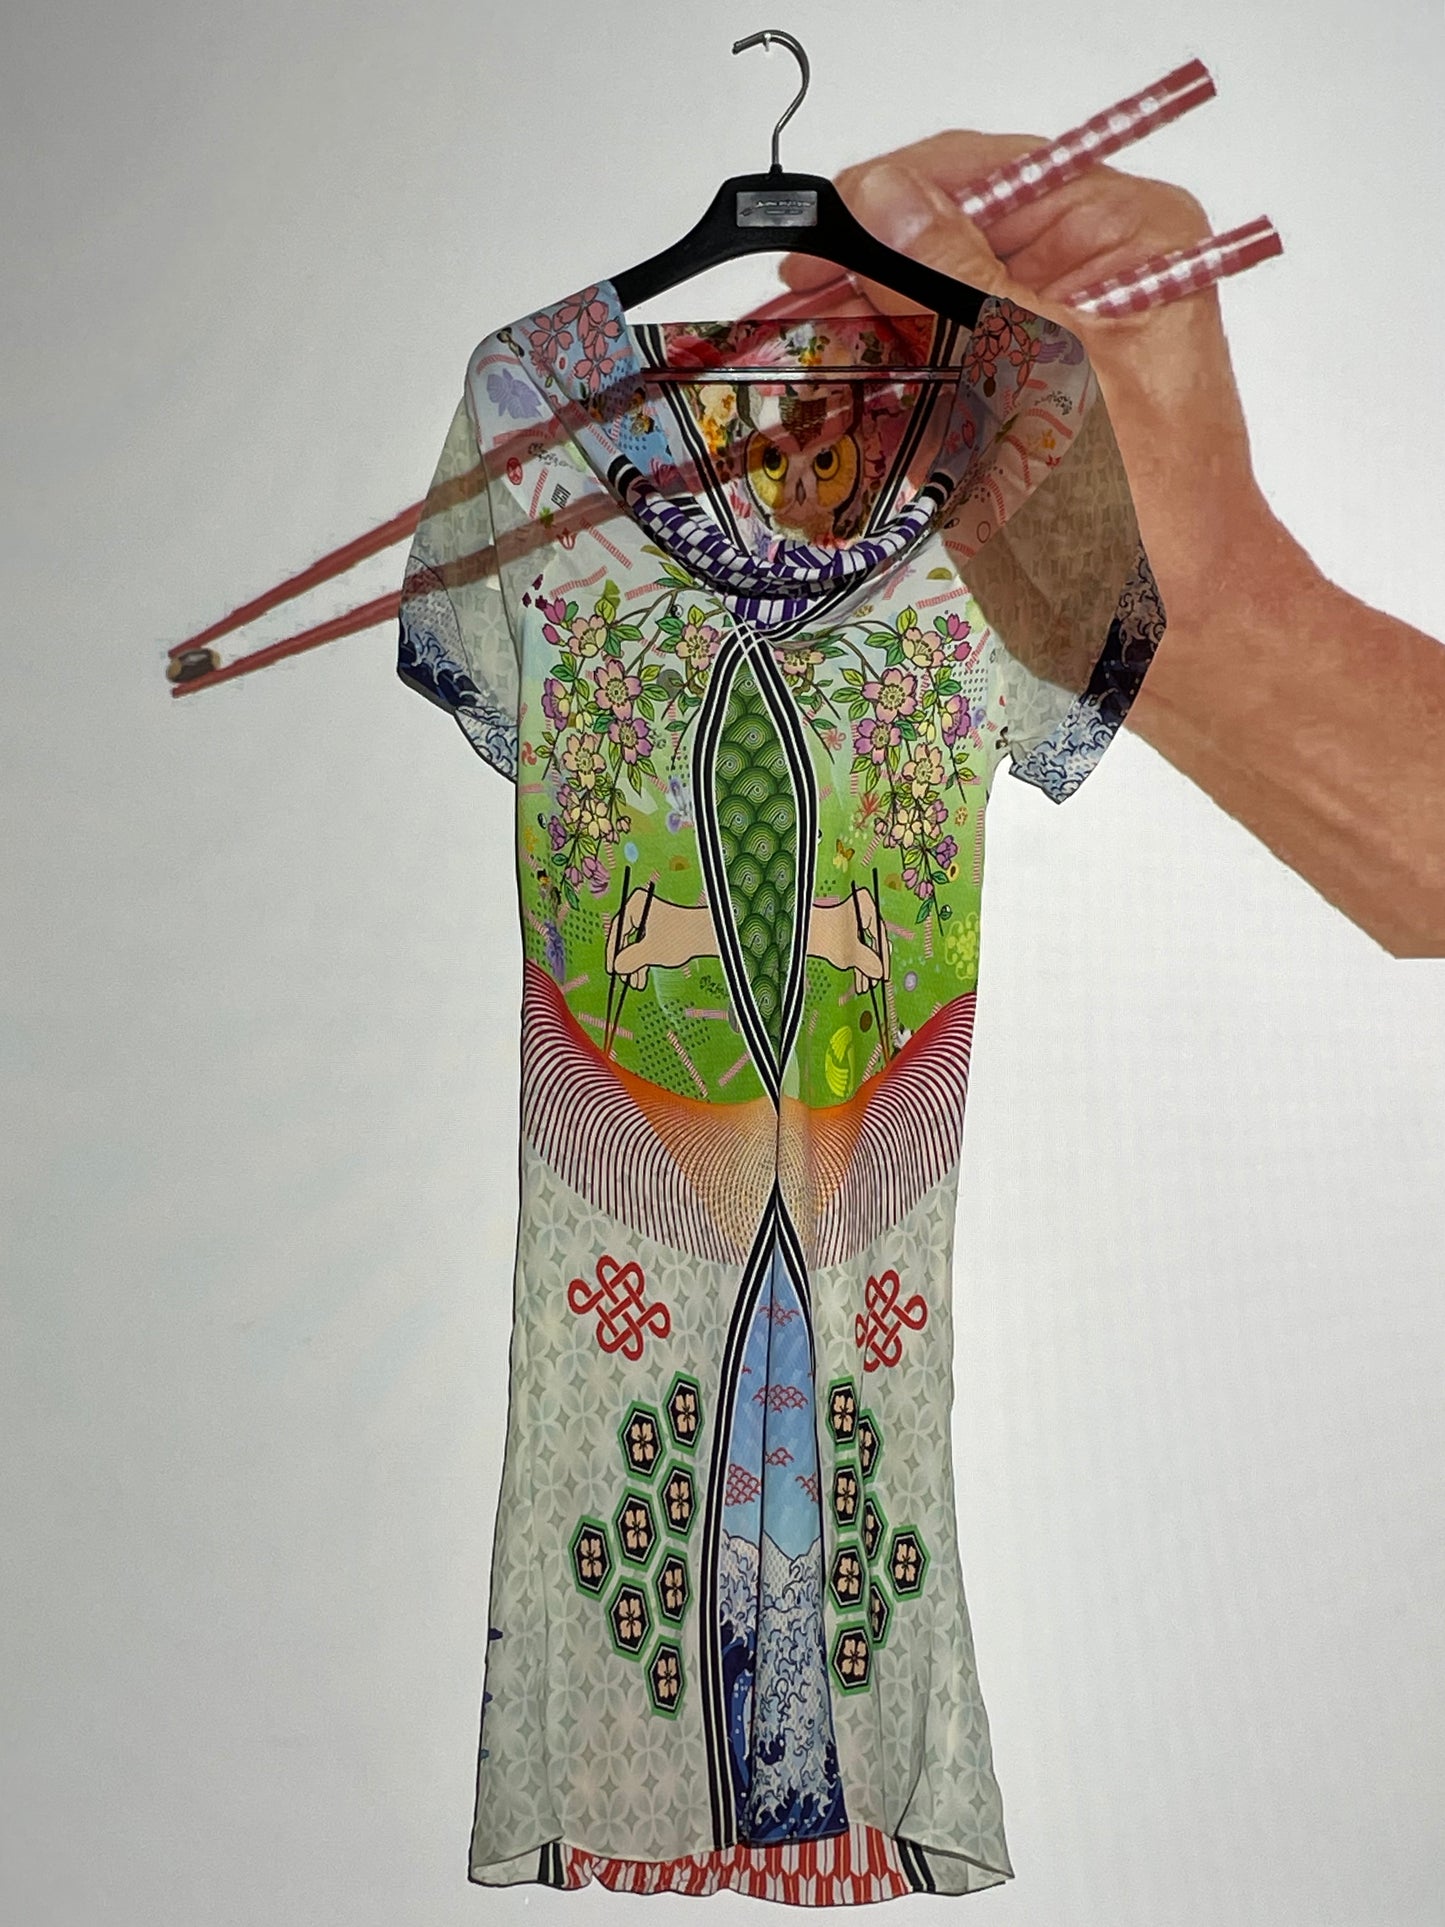 Basso & Brooke 2000's silk slip-on japanese imagerie inspired printed dress